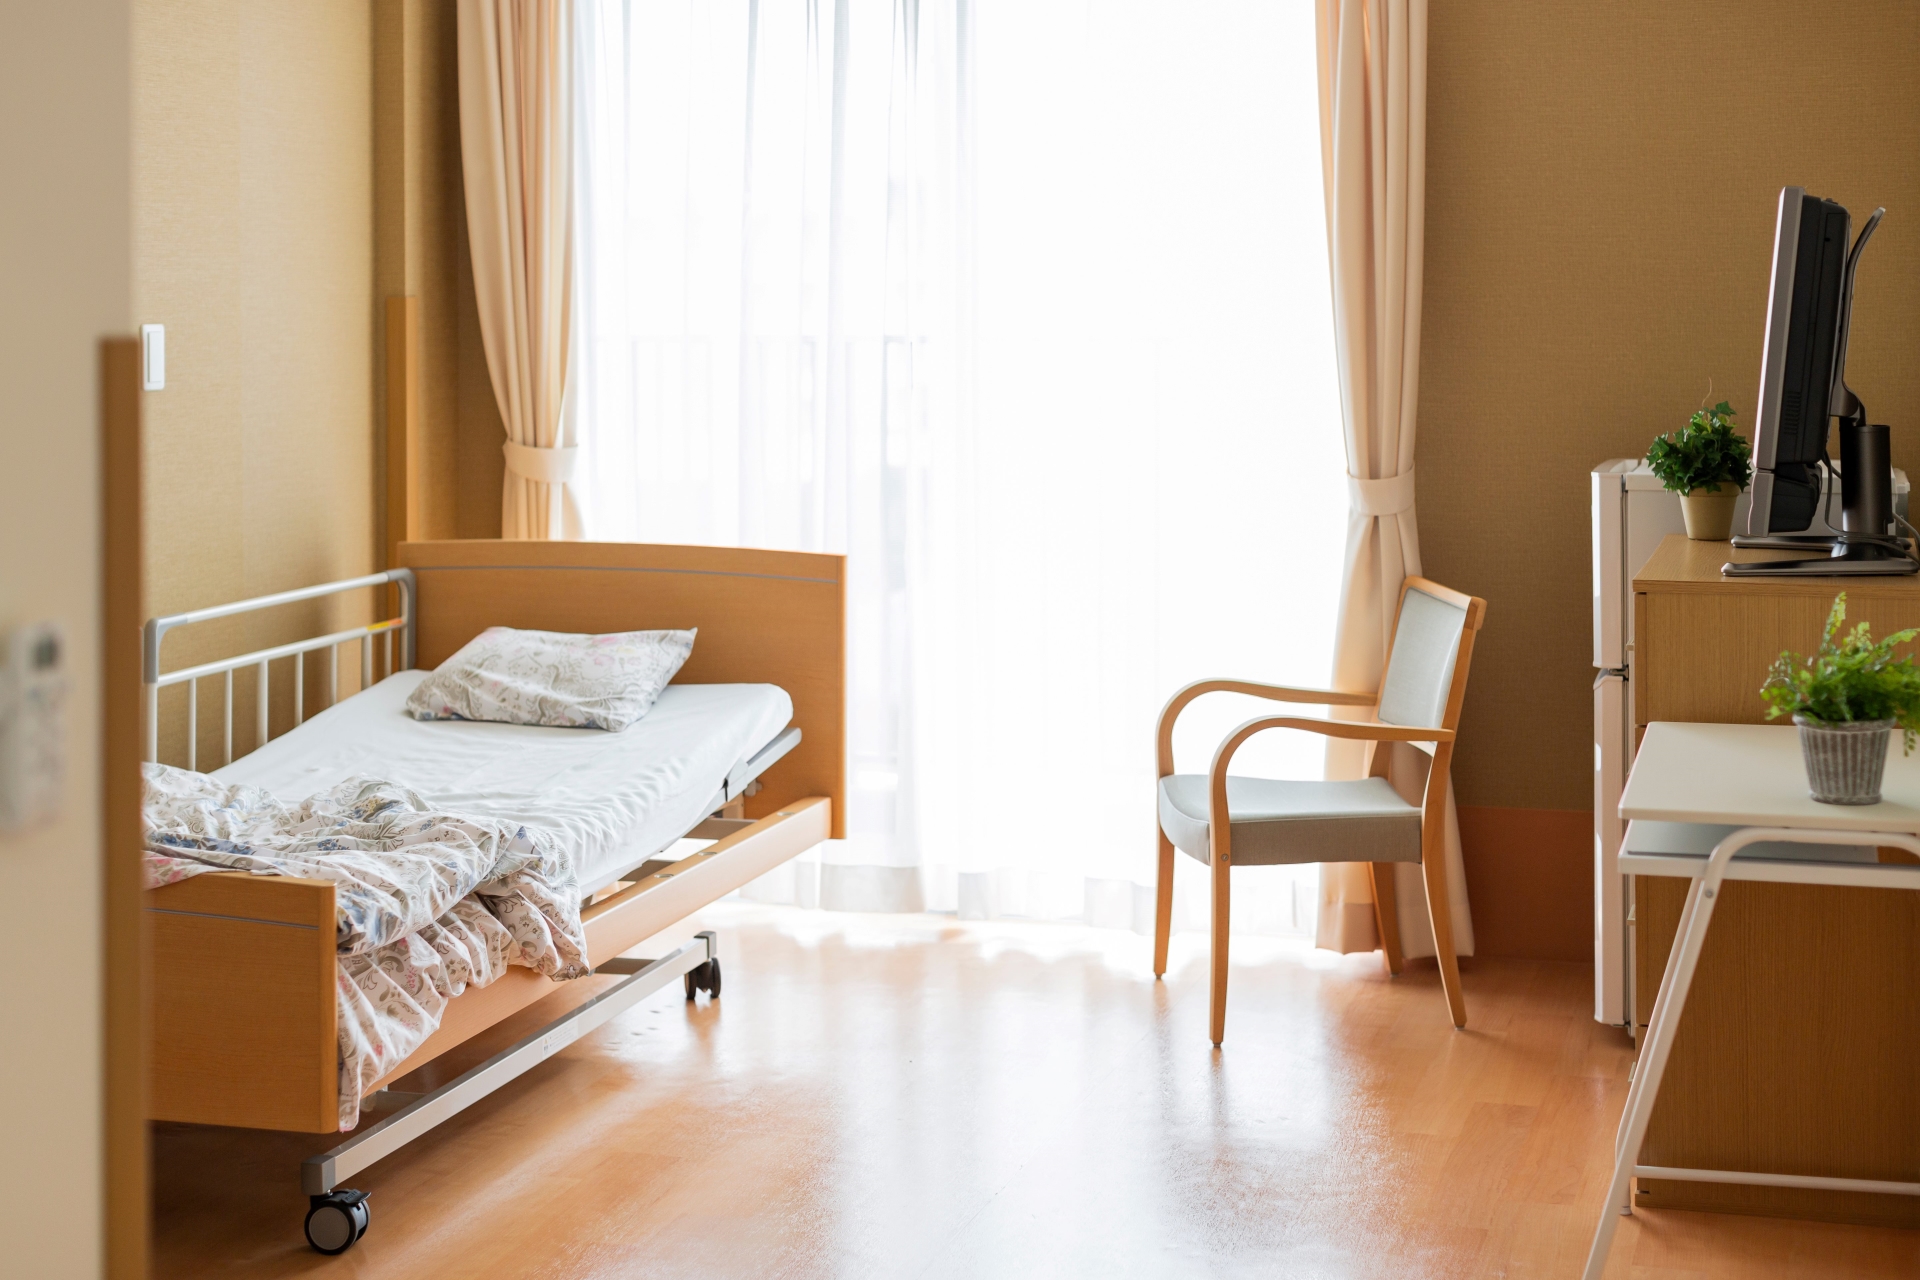 Insolvente Pflegeheimträger: Welche Verantwortung haben Pflegekassen?: Das Bild zeigt ein leeres Pflegezimmer. Auf der linken Seite steht ein benutztes Pflegebett. Auf der rechten Seite des Zimmers sind ein Stuhl sowie ein Tisch mit einem Fernseher zu sehen.